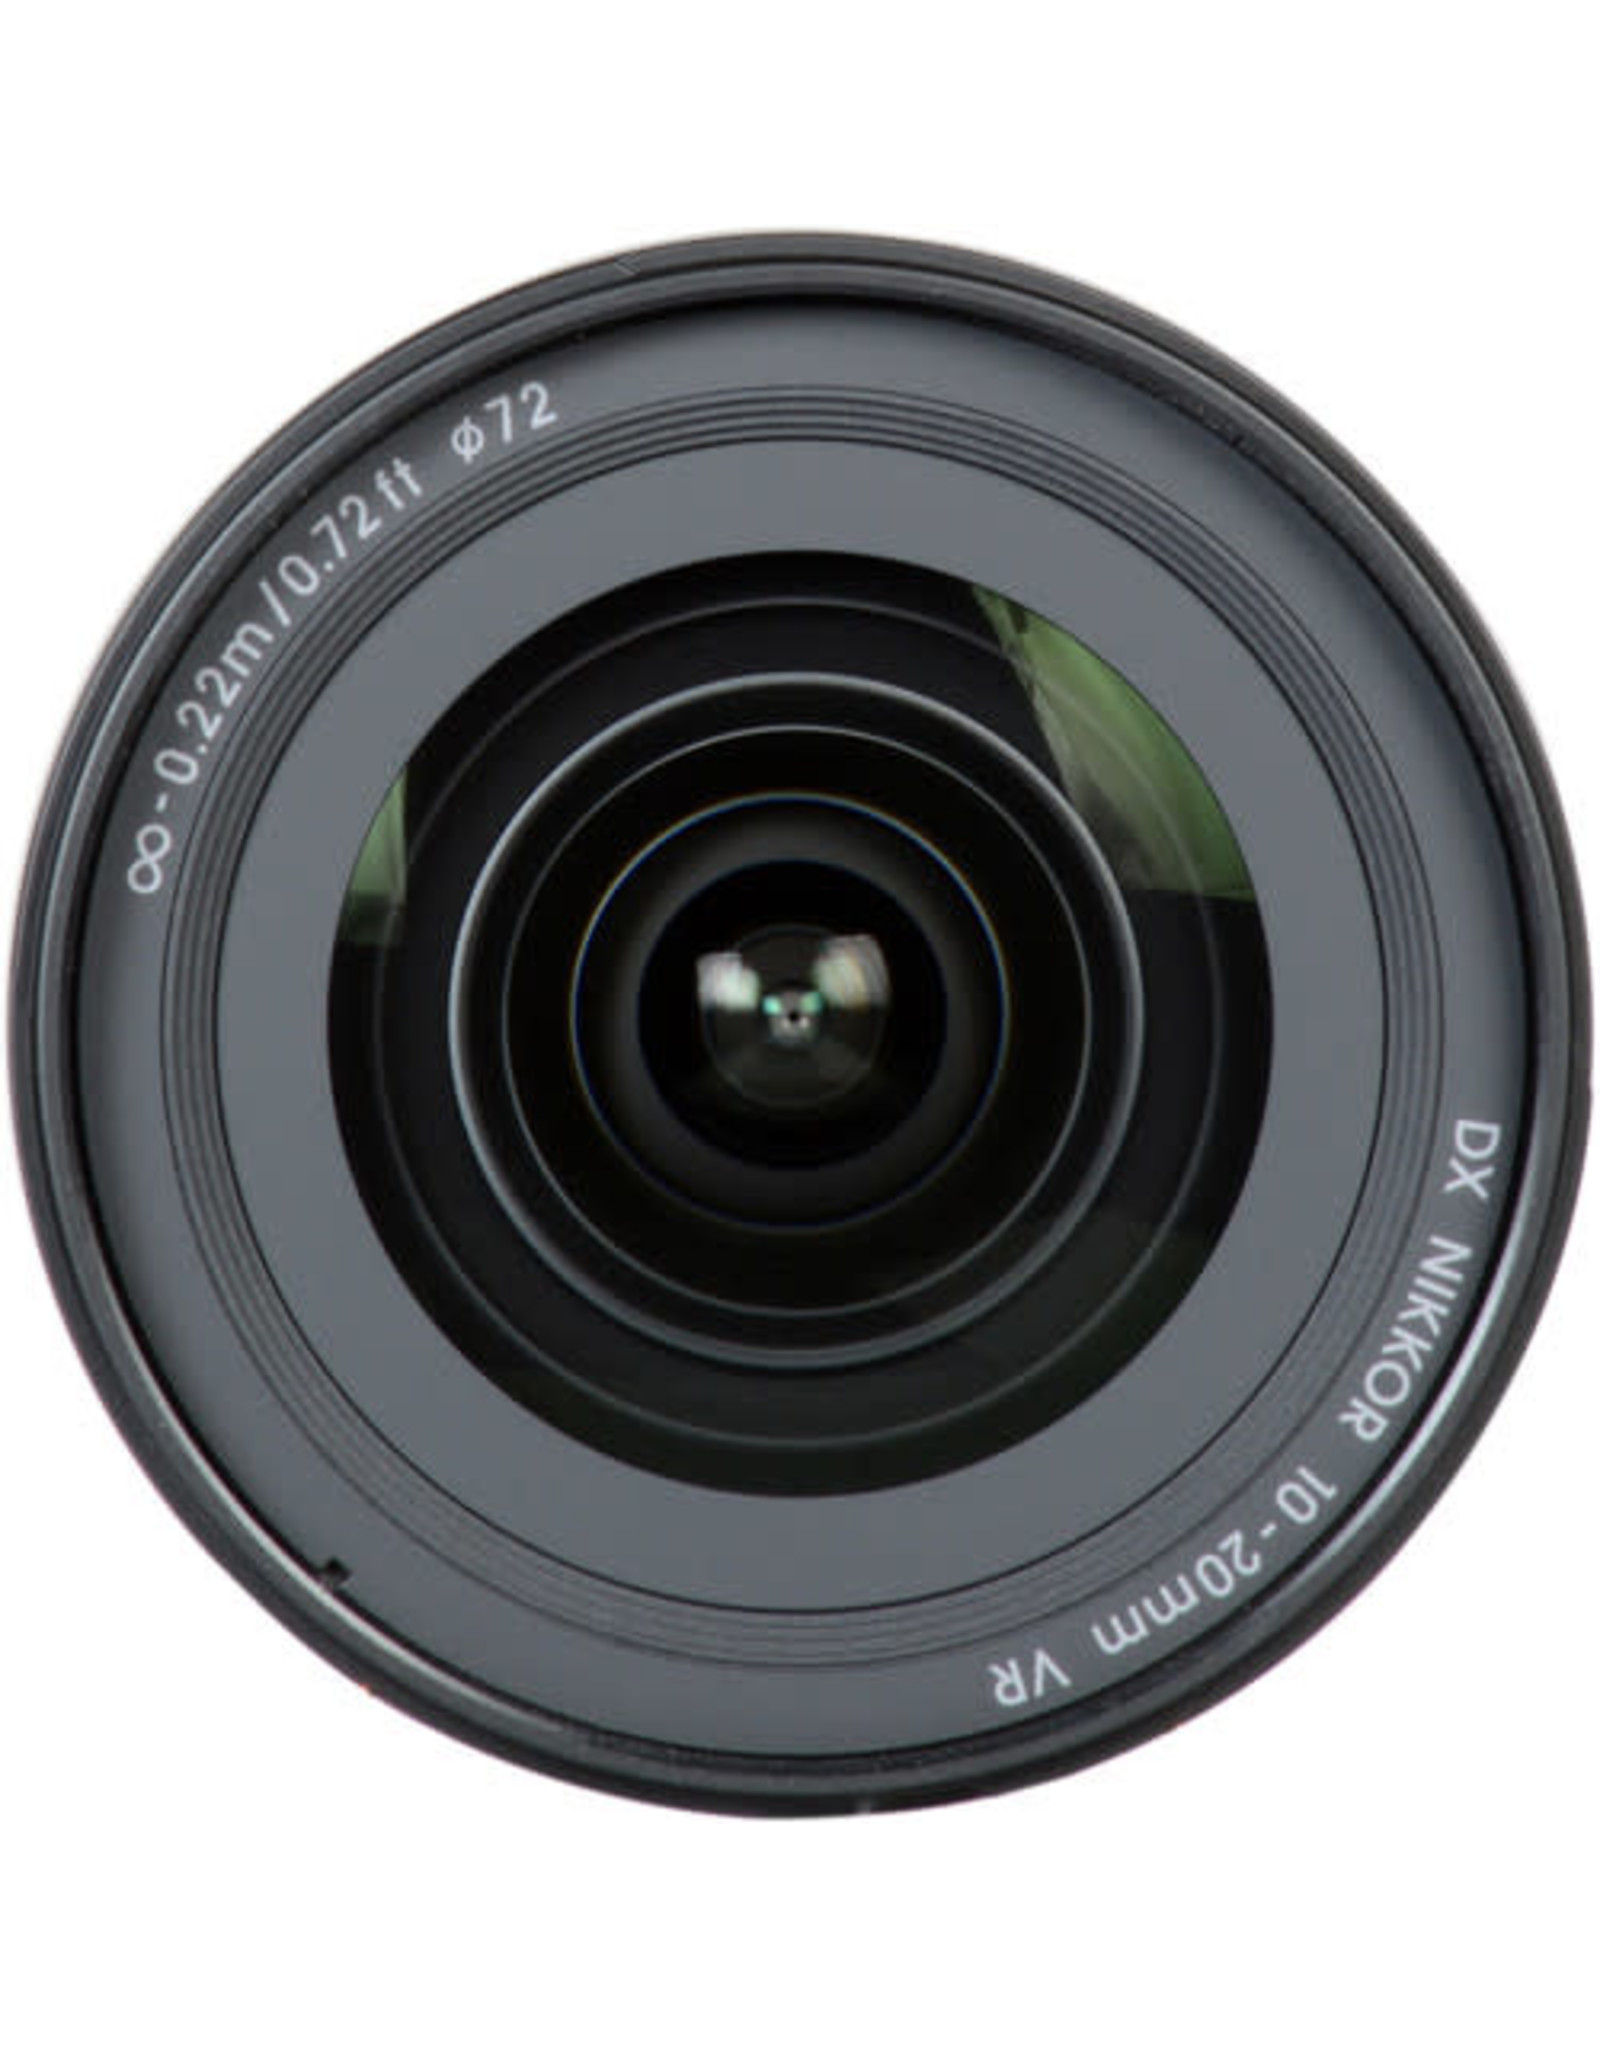 Nikon Nikon AF-P DX NIKKOR 10-20mm f/4.5-5.6G VR Lens